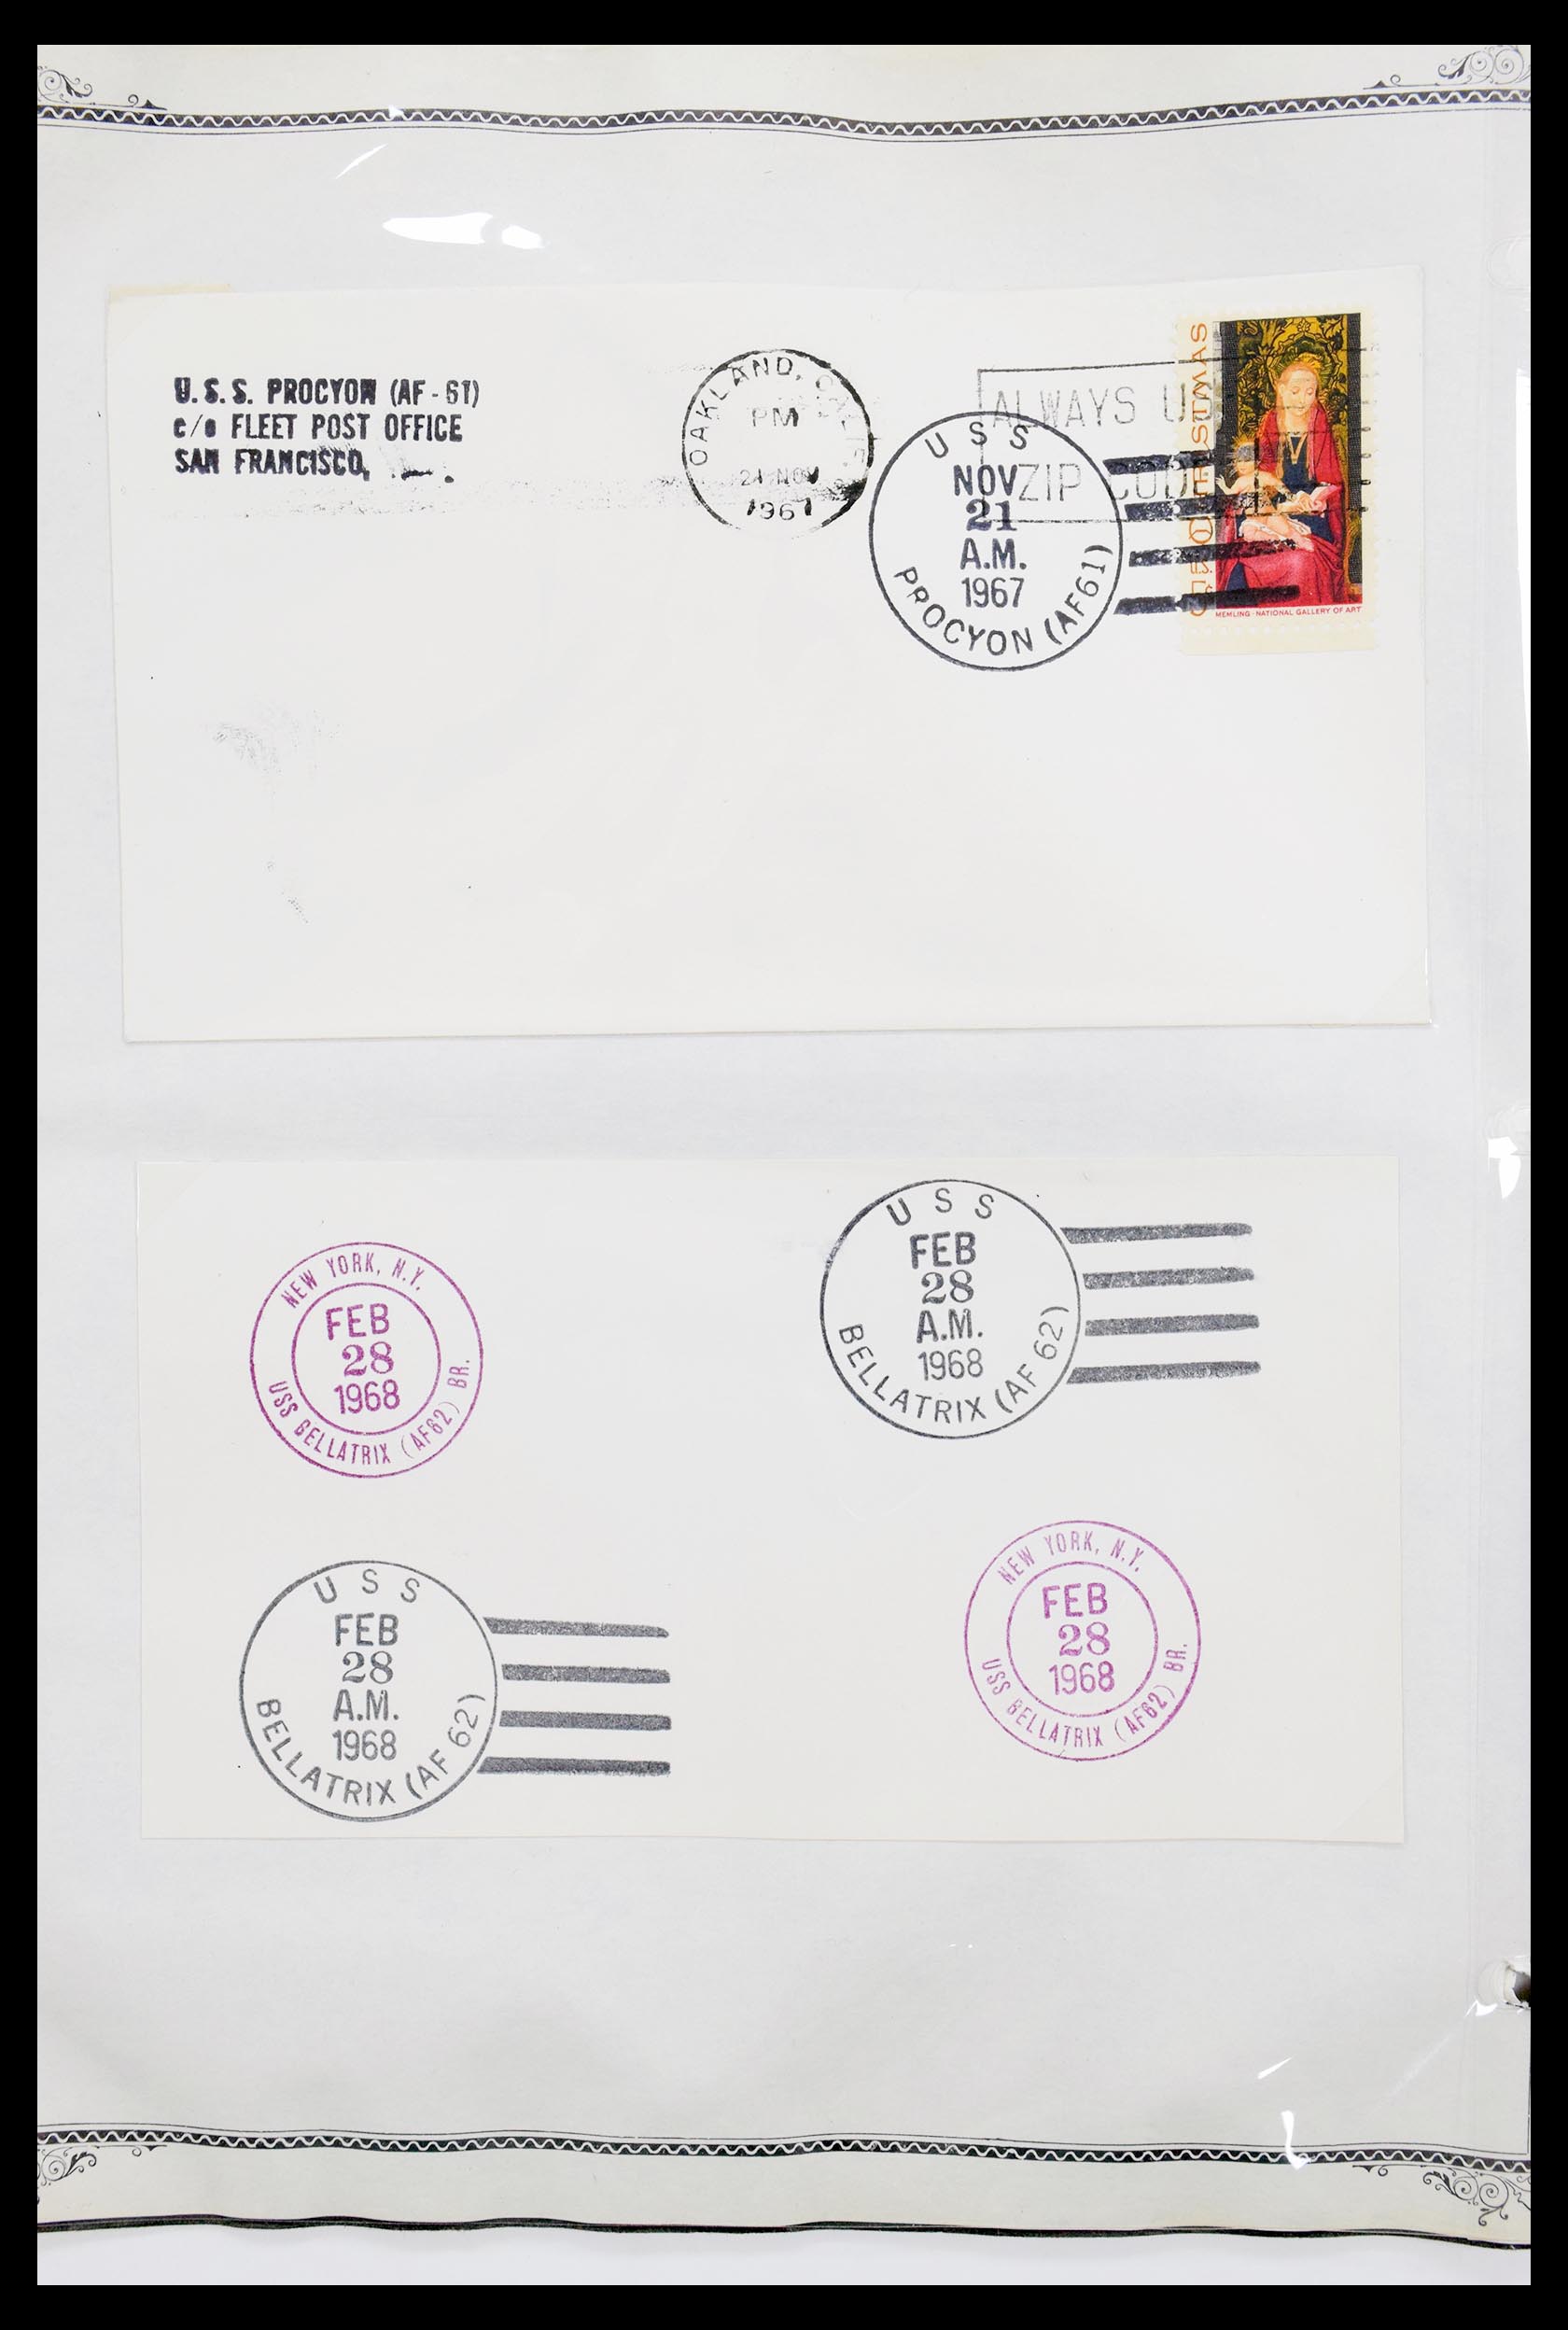 30341 031 - 30341 USA scheepspost brieven 1930-1970.